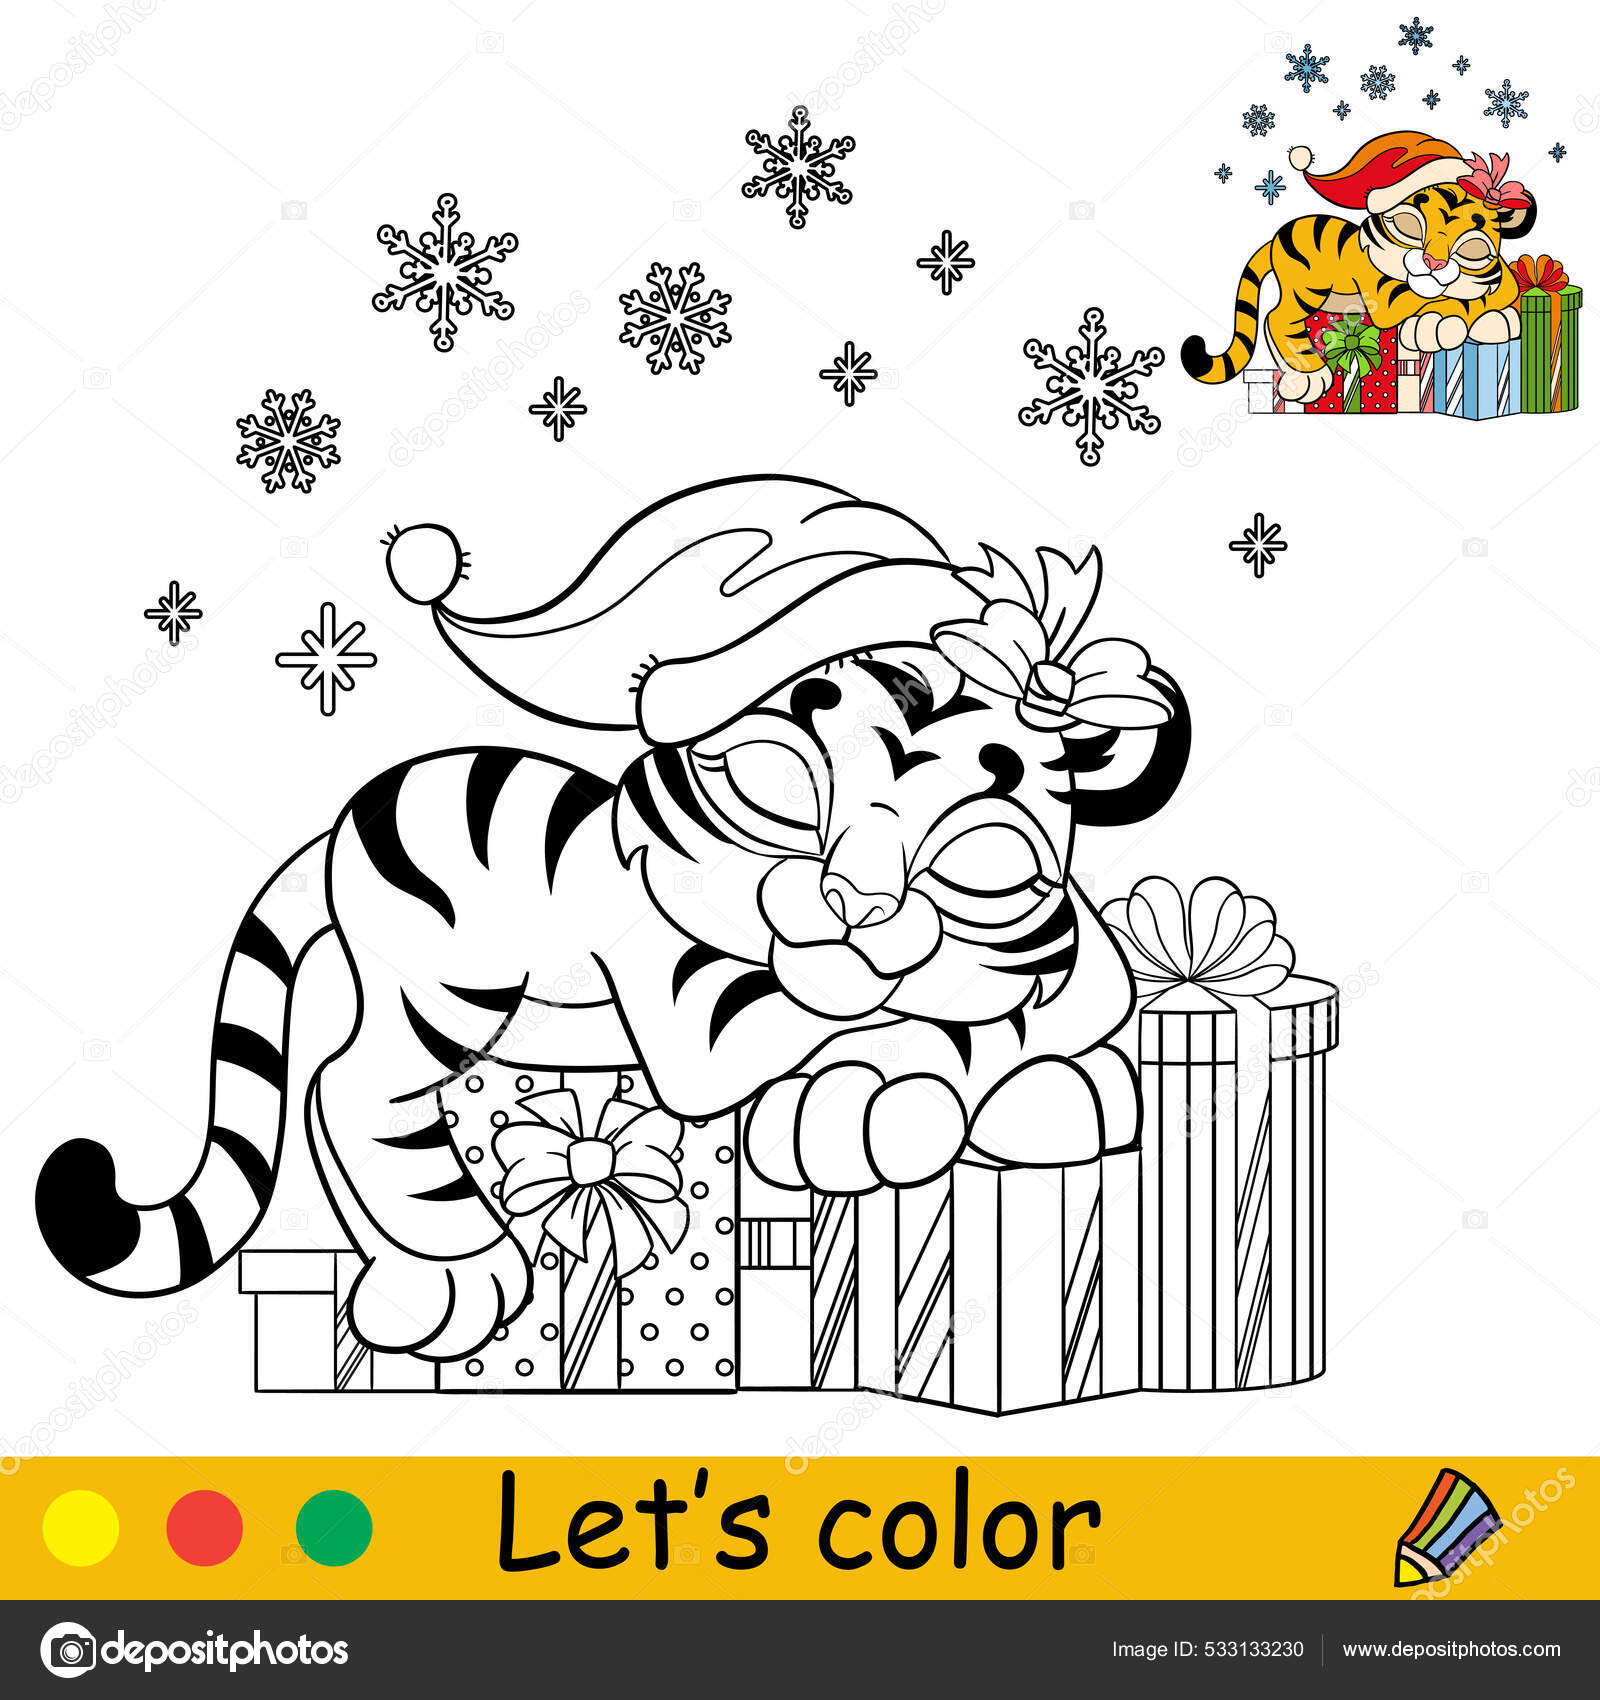 Desenho de Colorido para Colorir - Colorir.com